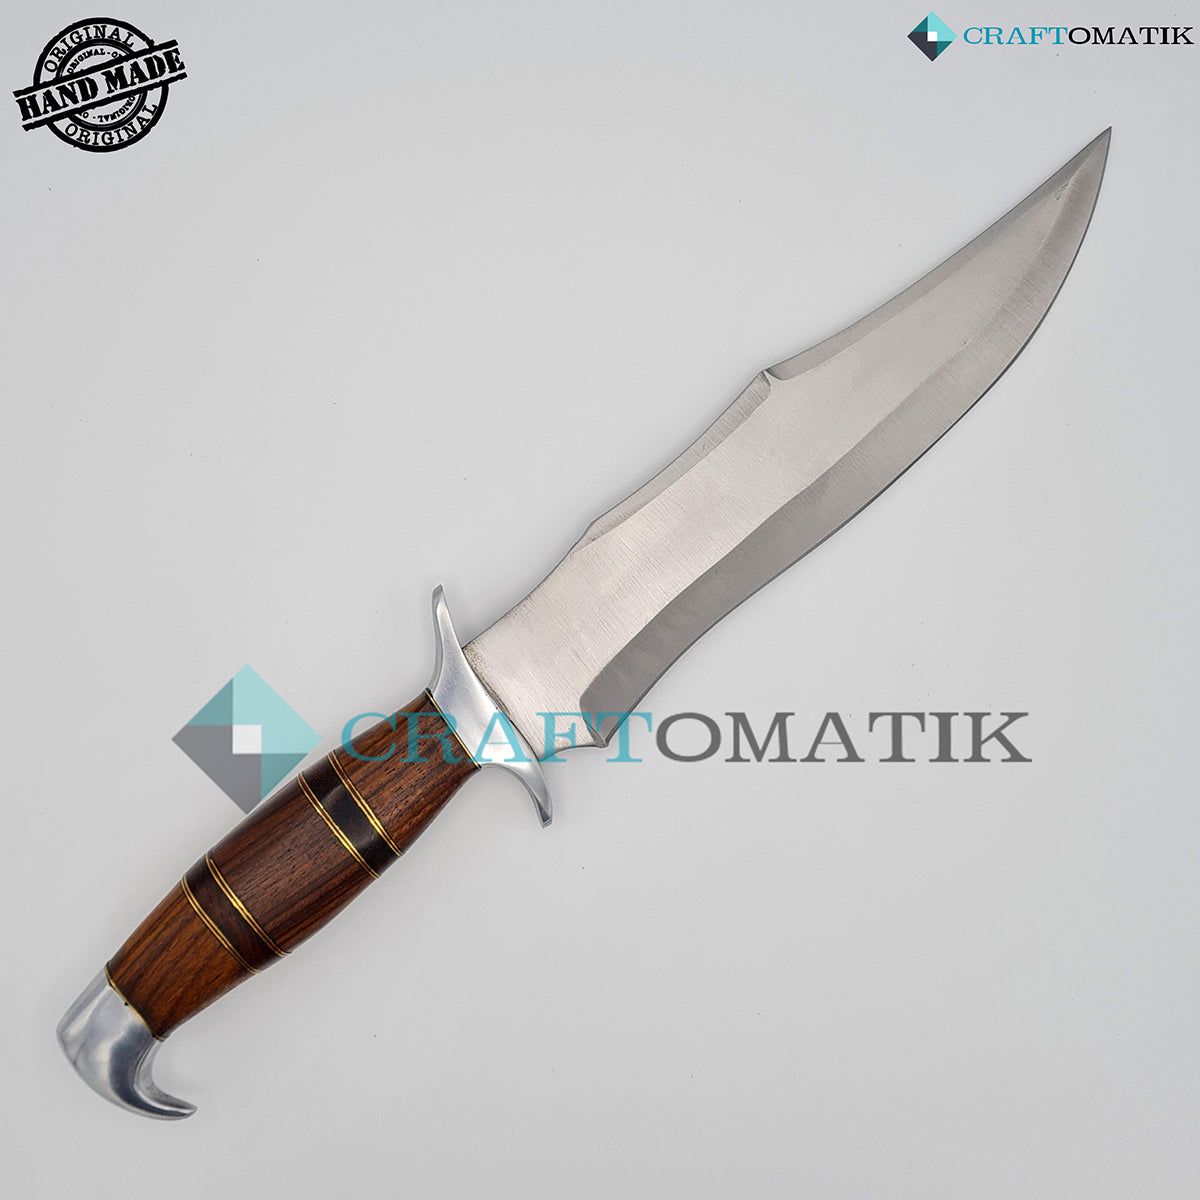 Elite Hunting Knife | Stainless Steel | Custom Engraving